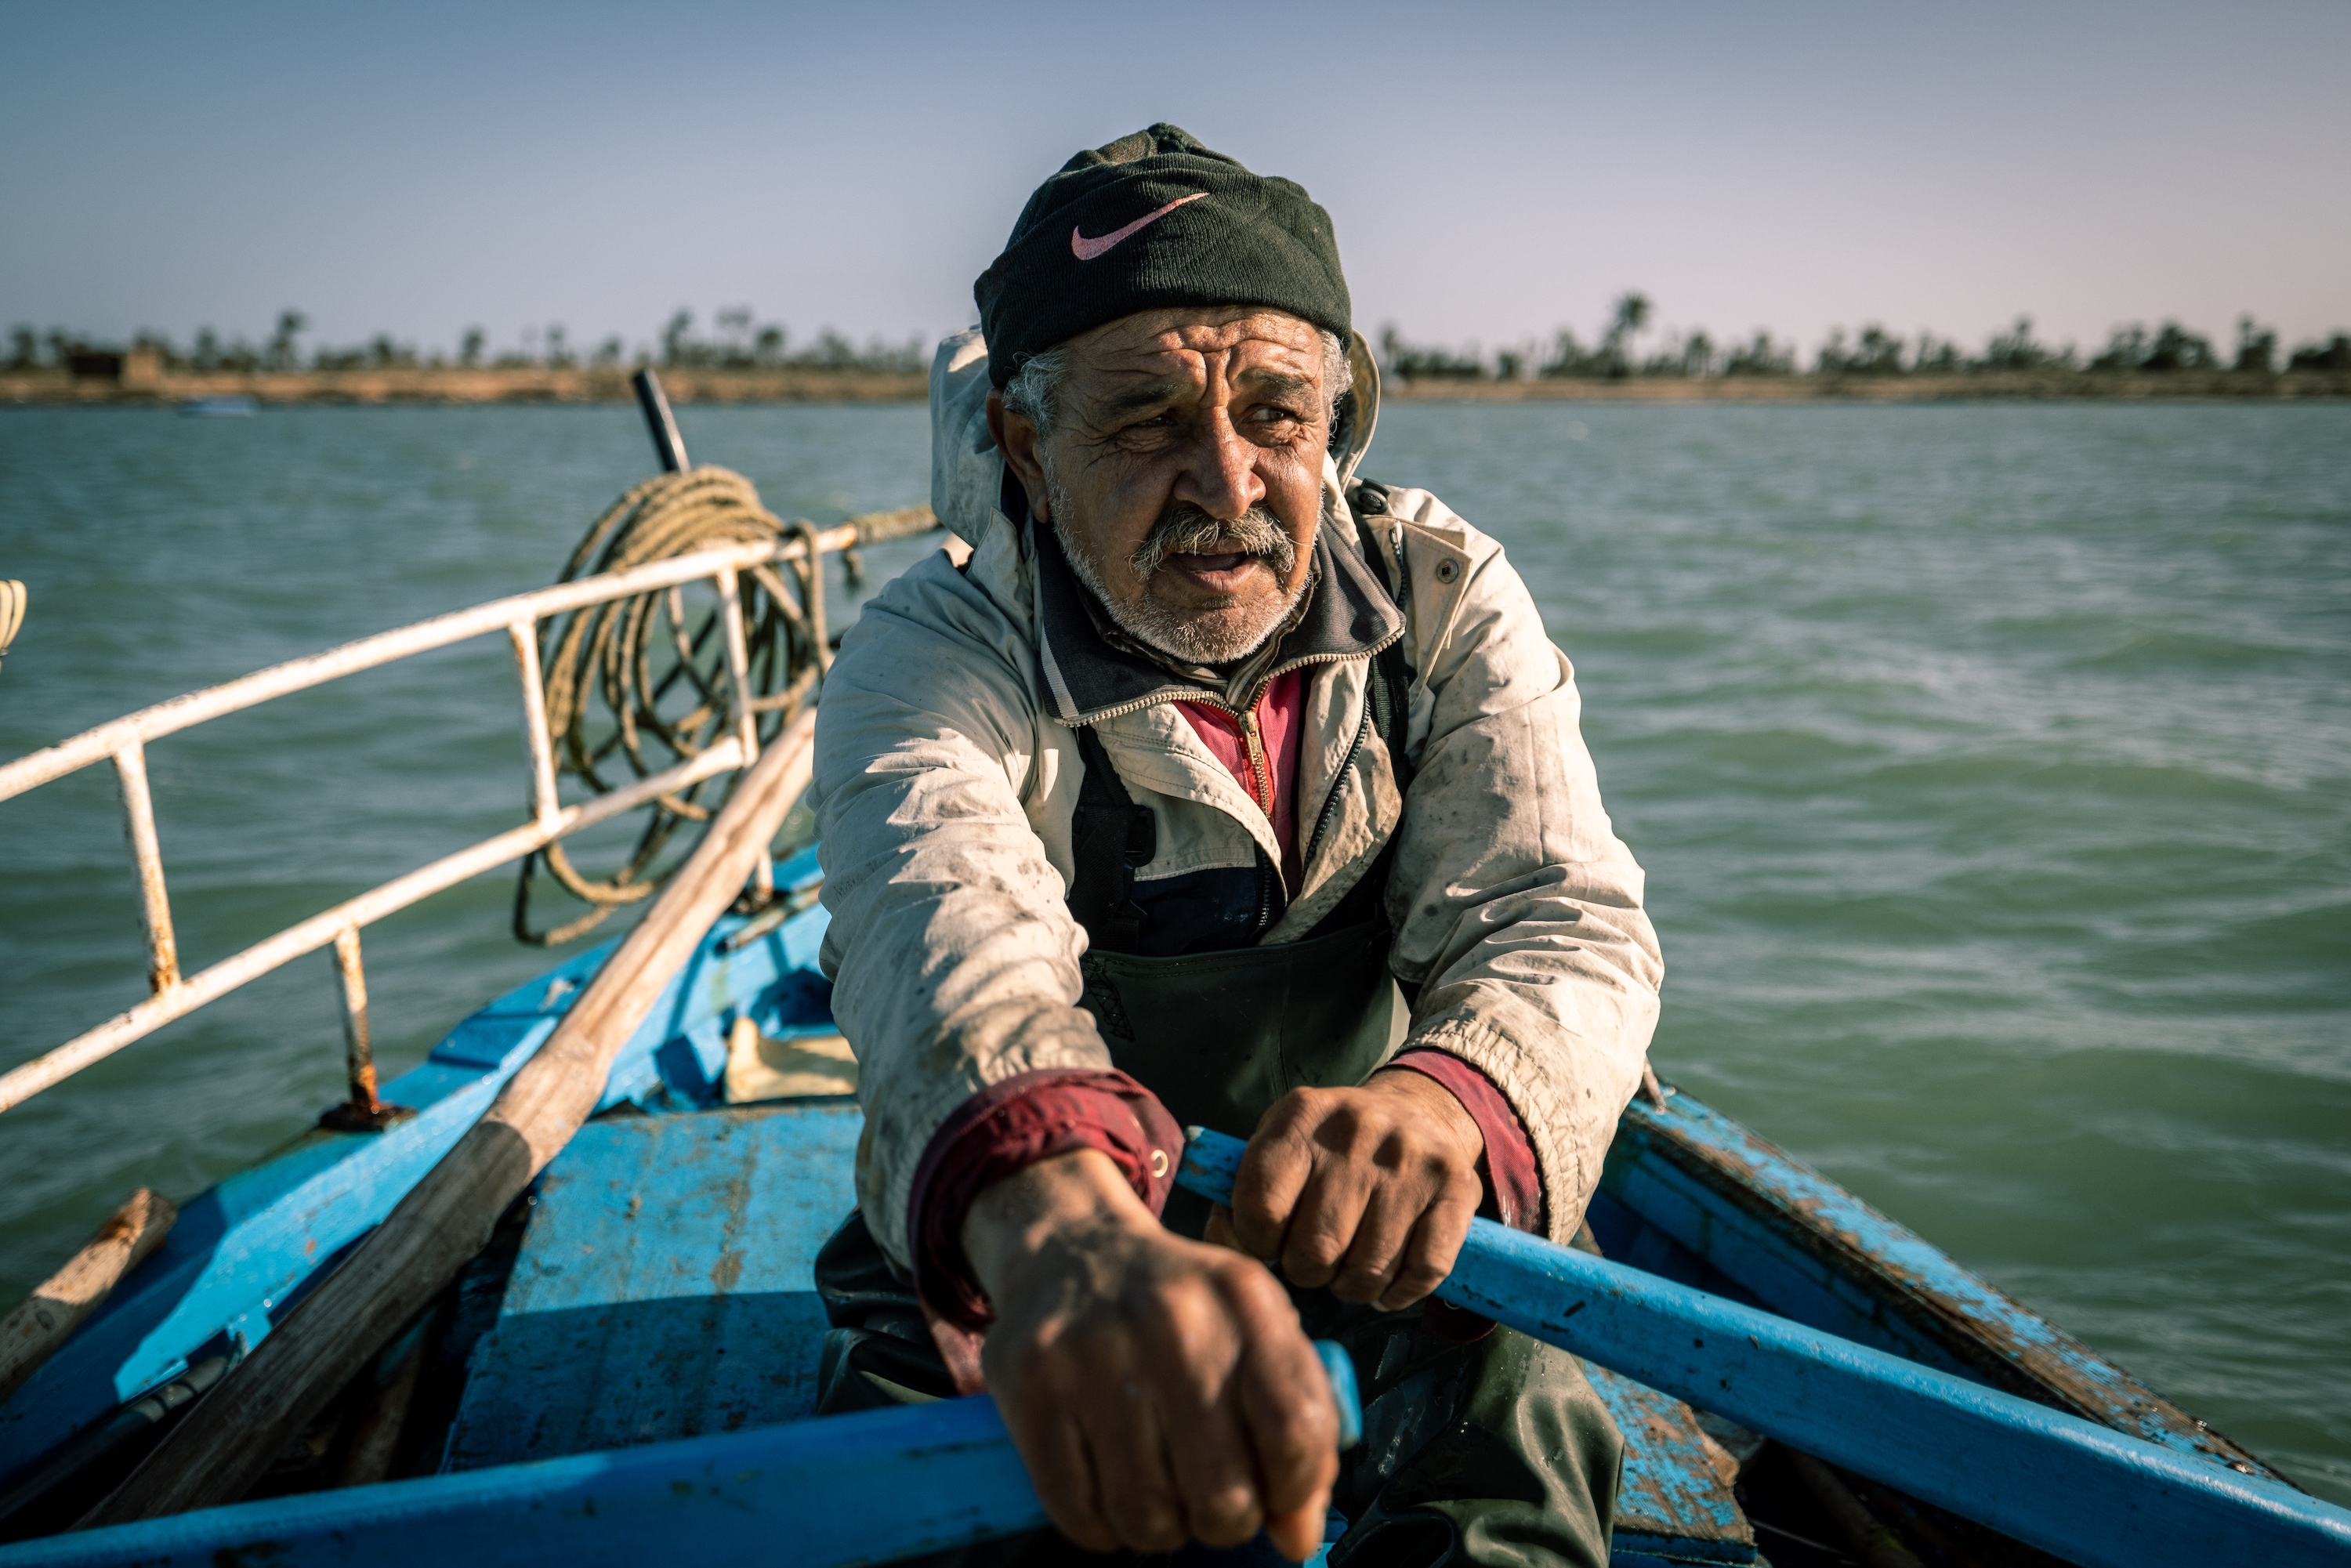 Illegale Grundschleppnetzfischerei im Mittelmeer bedroht Ökosysteme und Lebensgrundlagen